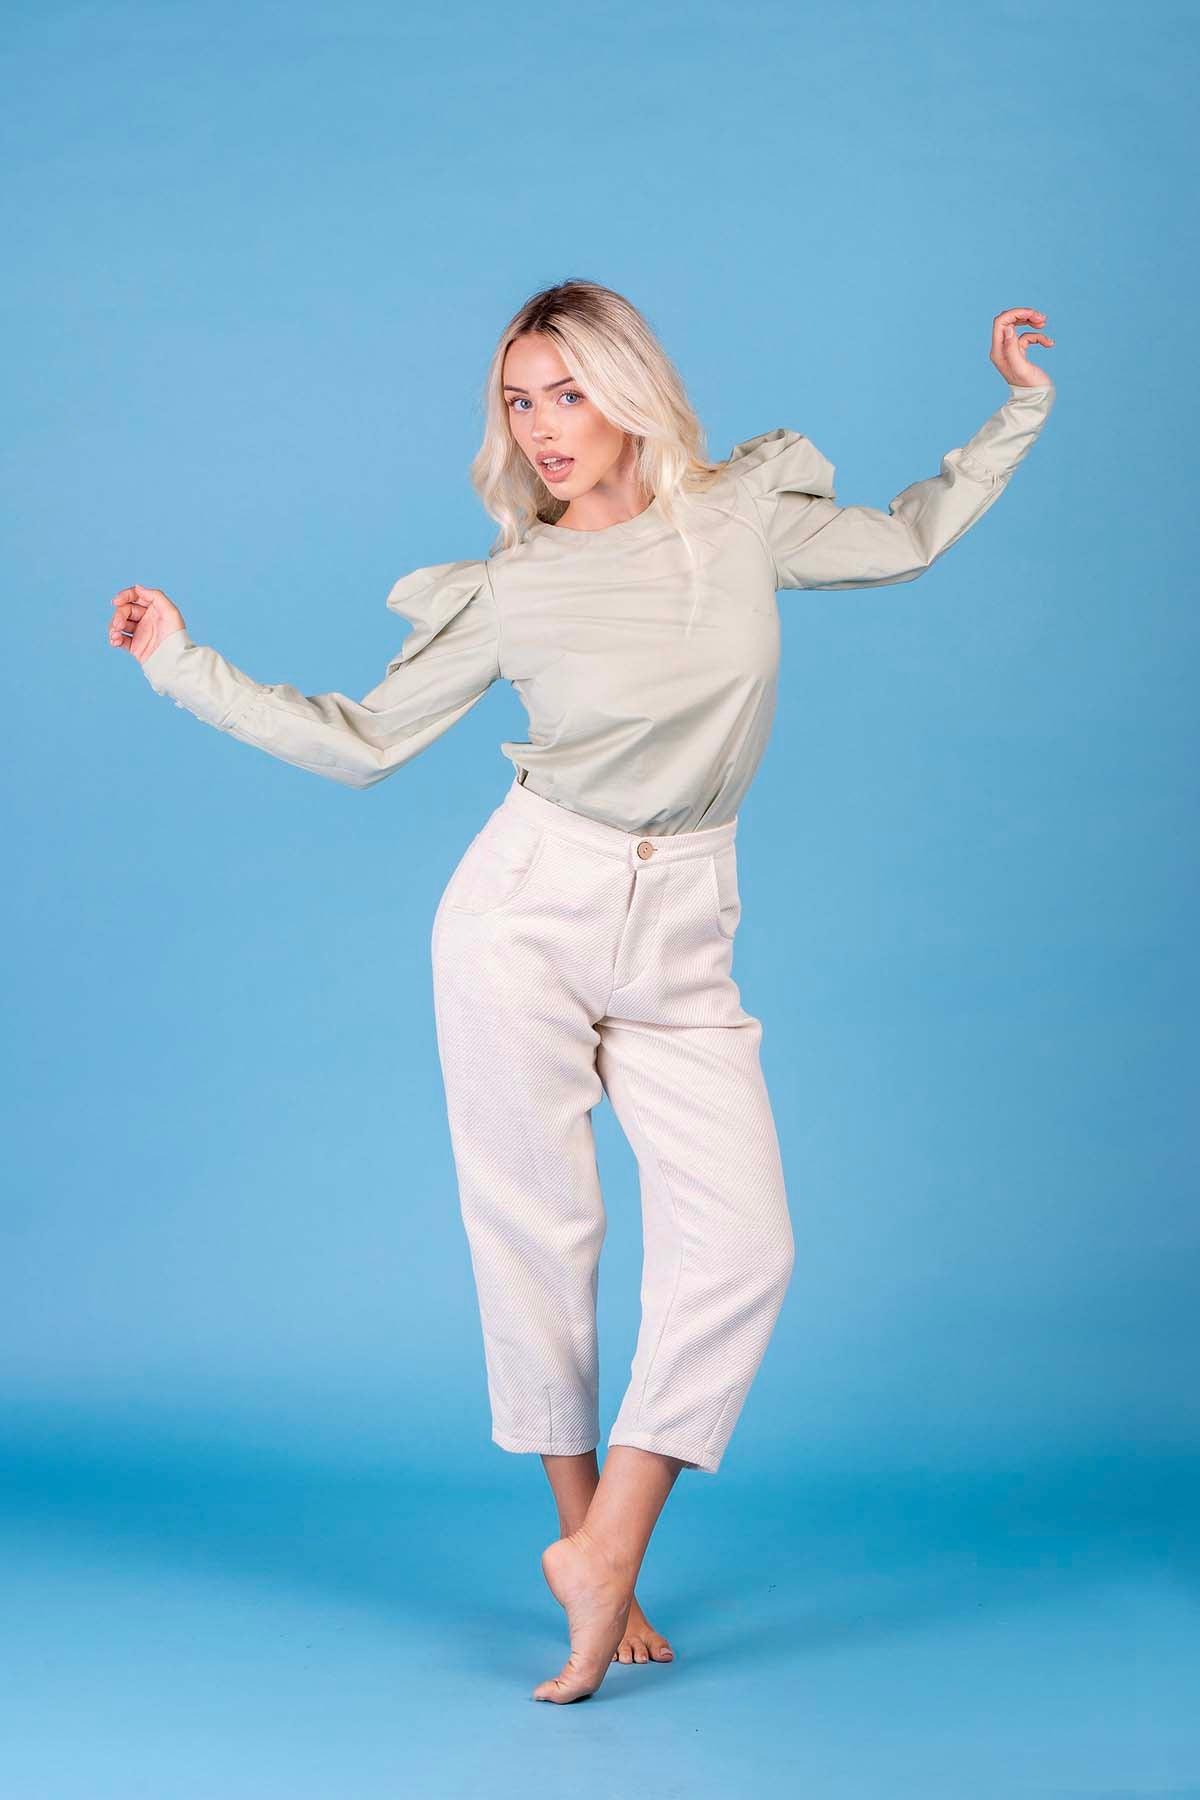 Pantalone Marrakech cotone lana lino canapa comodo vestibilita comoda brand malia lab moda etica abbigliamento sostenibile vestiti sostenibili donna in fibre naturali vista frontale